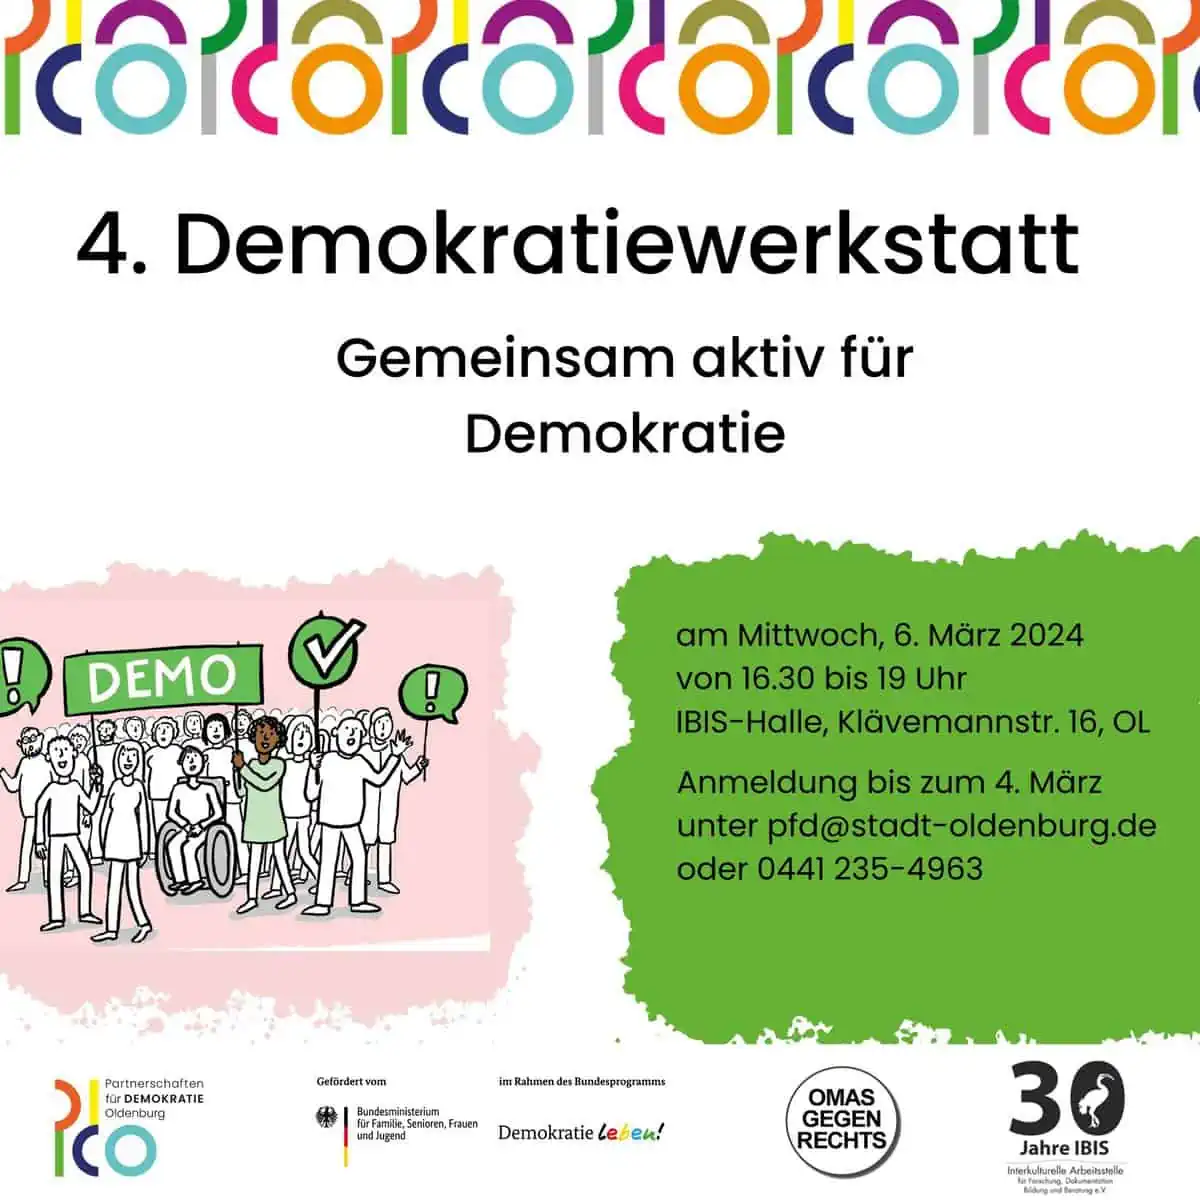 4. Demokratiewerkstatt - Gemeinsam aktiv für Demokratie